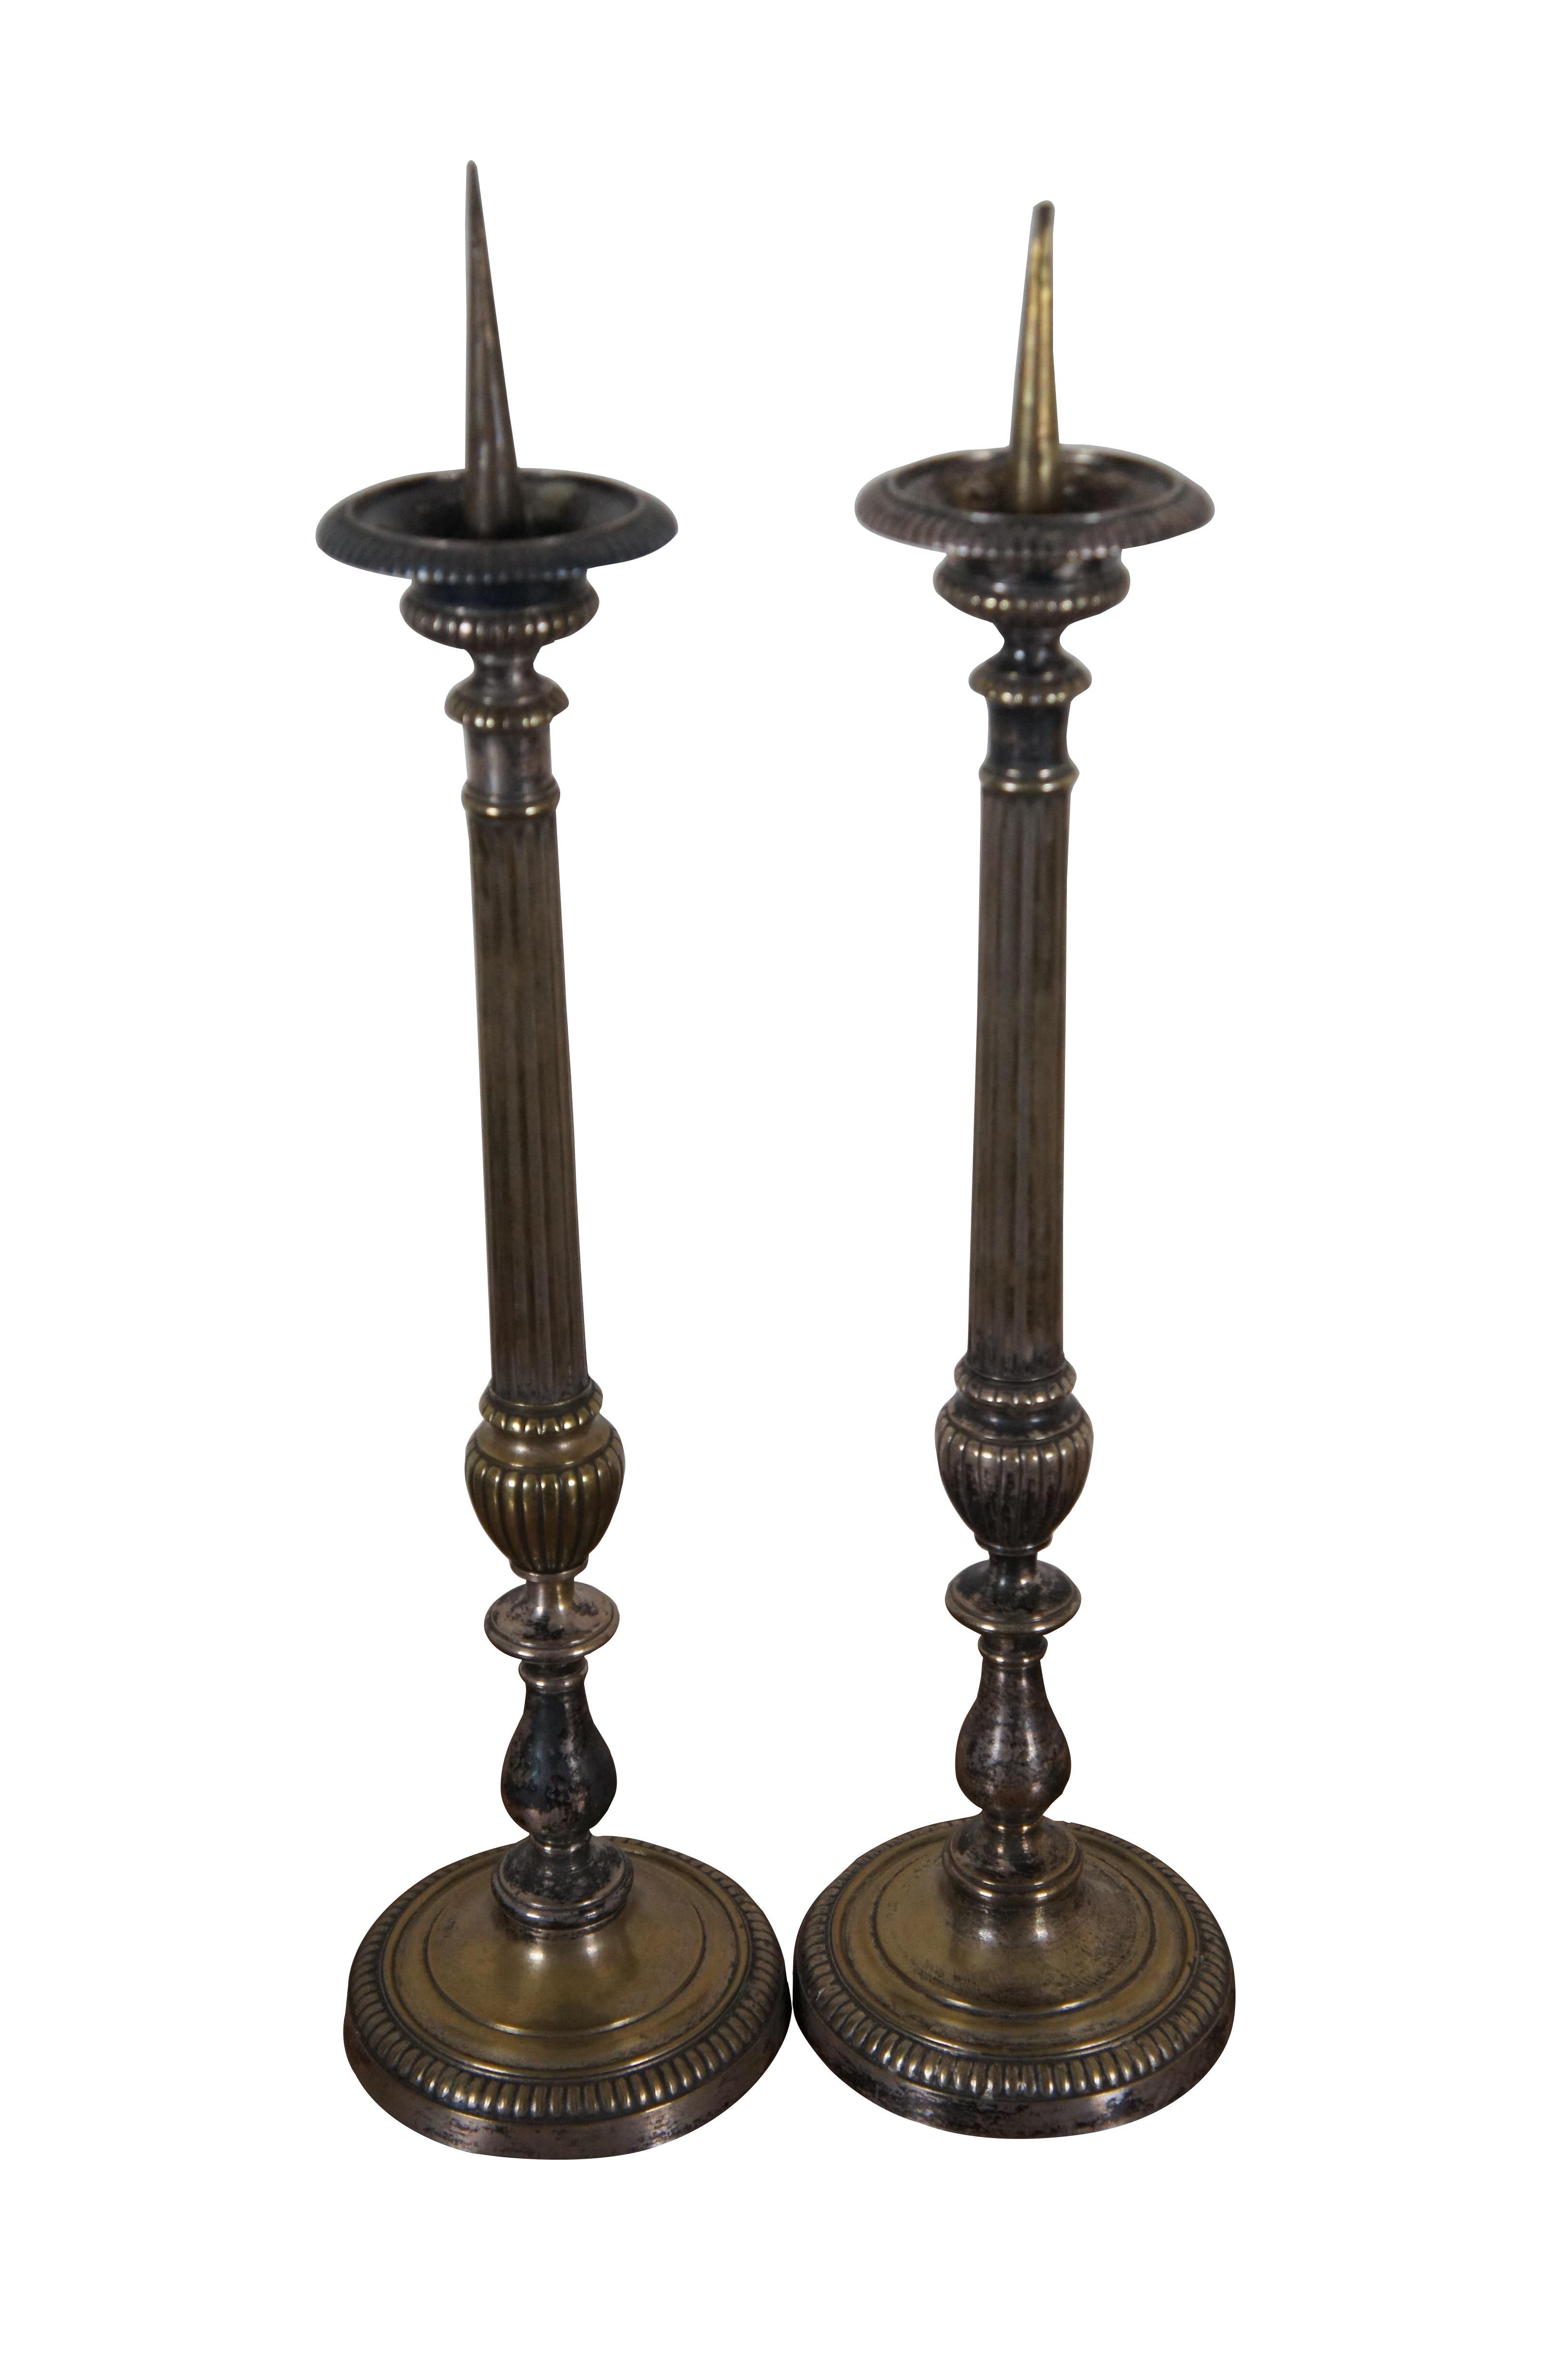 Zwei antike Französisch Louis XVI-Stil Silberblech Kaminsims oder Boden Prickets / Kerzenständer / Kerzenhalter mit einem hohen geriffelten Säule mit Trophäe Urne Form Sockel.

In der Geschichte der Religion haben Licht und Feuer die heiligen Riten